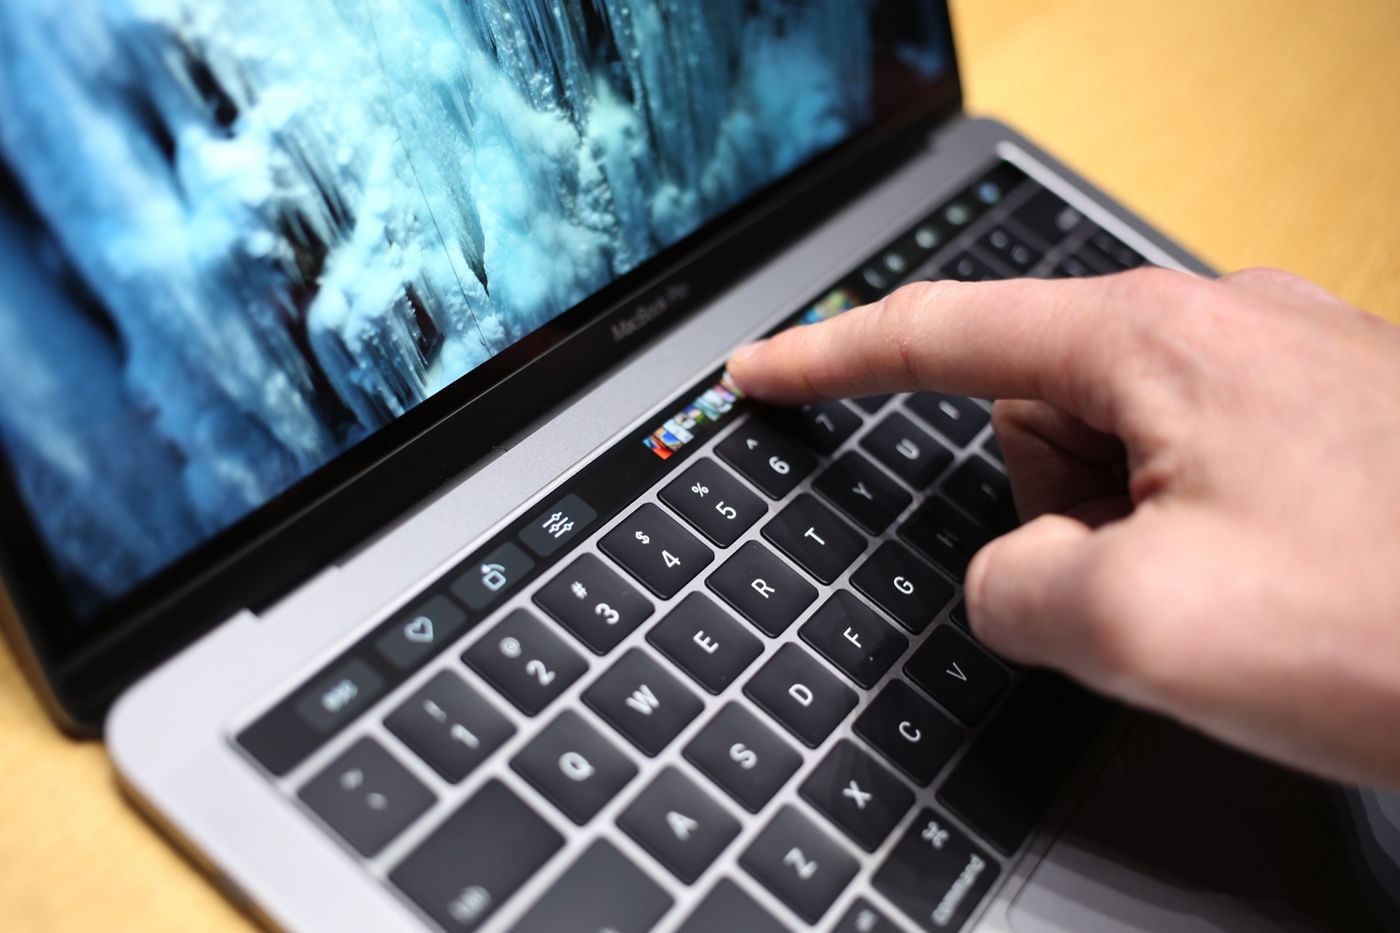 touch bar id macbook pro 2016 klávesnice klavesnice